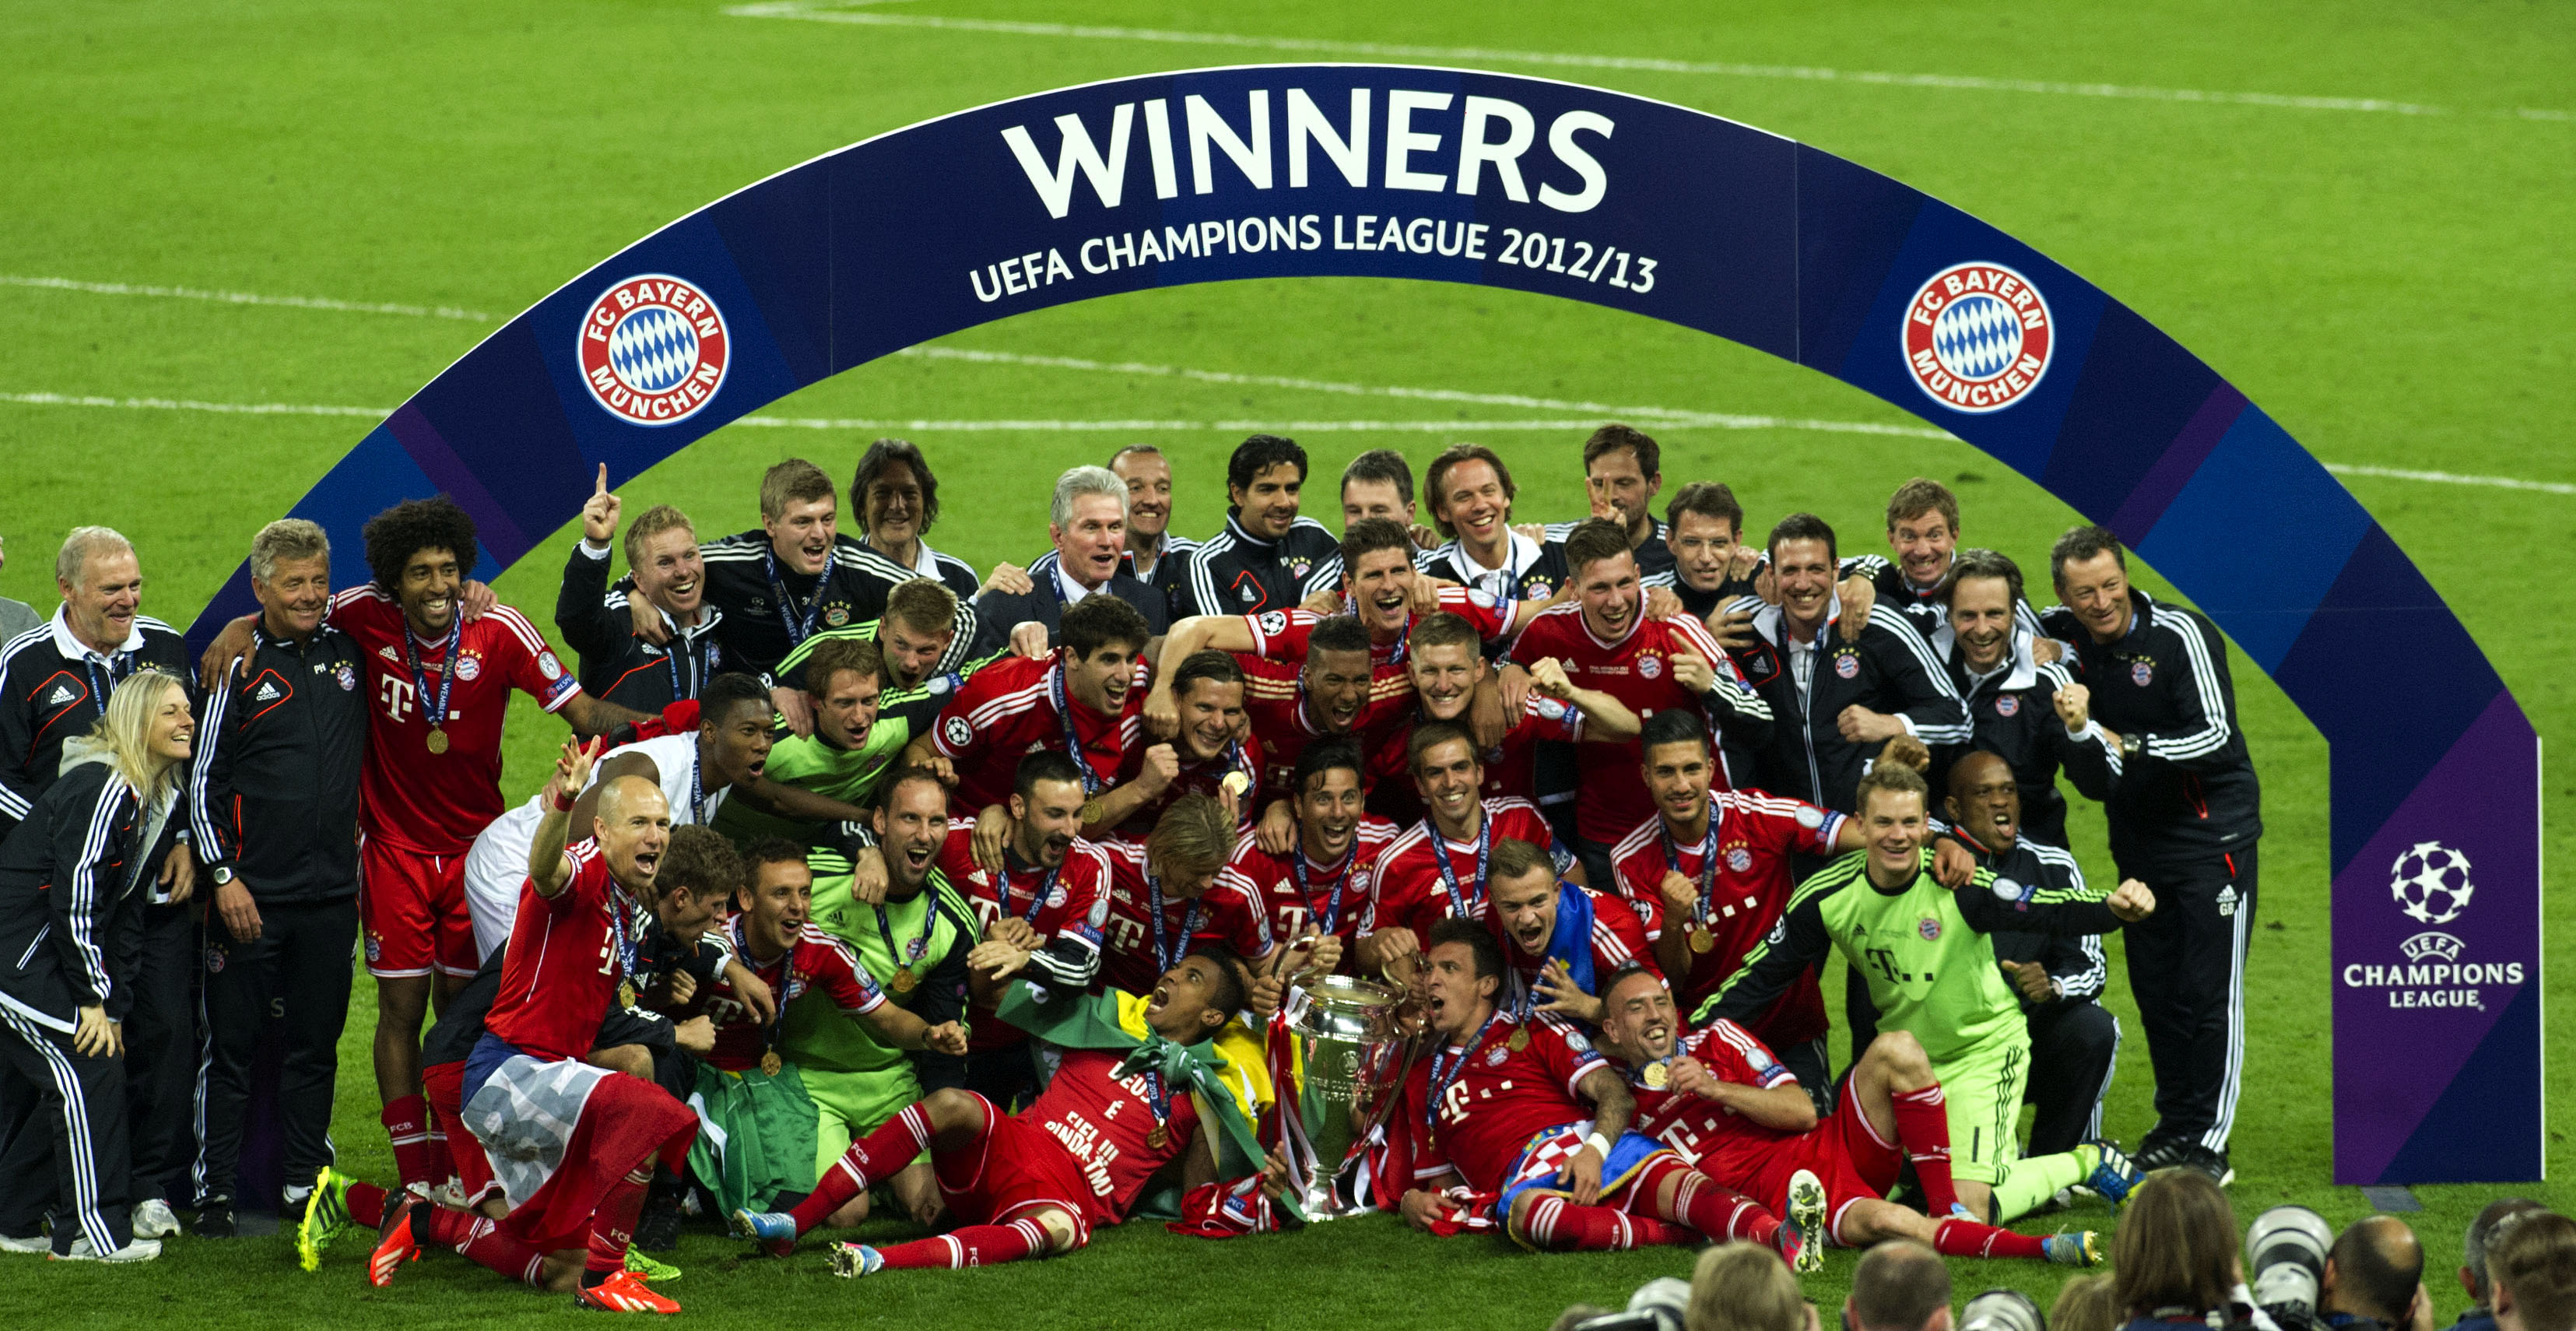 25/05/13 UEFA CHAMPIONS LEAGUE FINAL.BORUSSIA DORTMUND V BAYERN MUNICH (1-2).WEMBLEY - LONDON.Bayern Munich celebrate winning the UEFA Champions League.